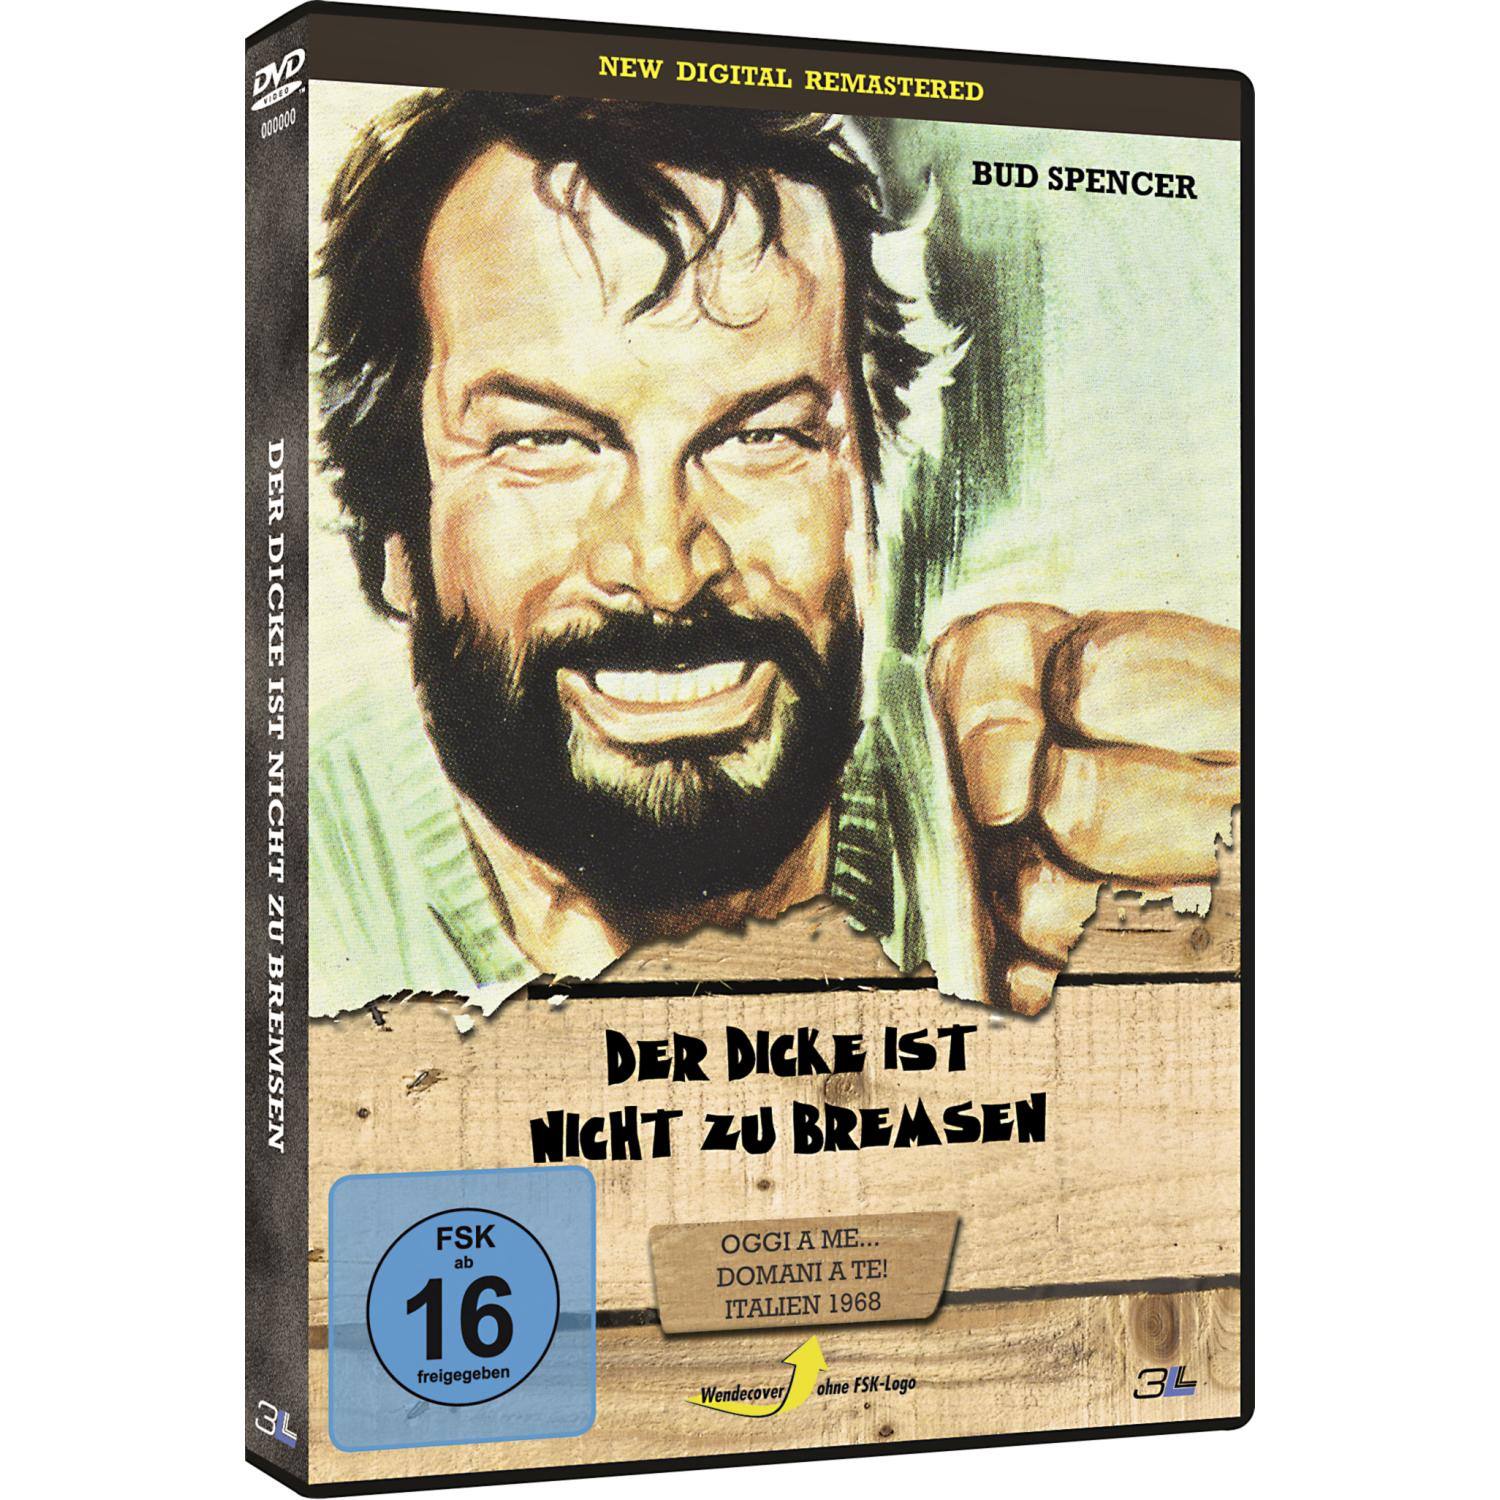 Der Dicke ist nicht zu Remastered) bremsen Digital (New DVD